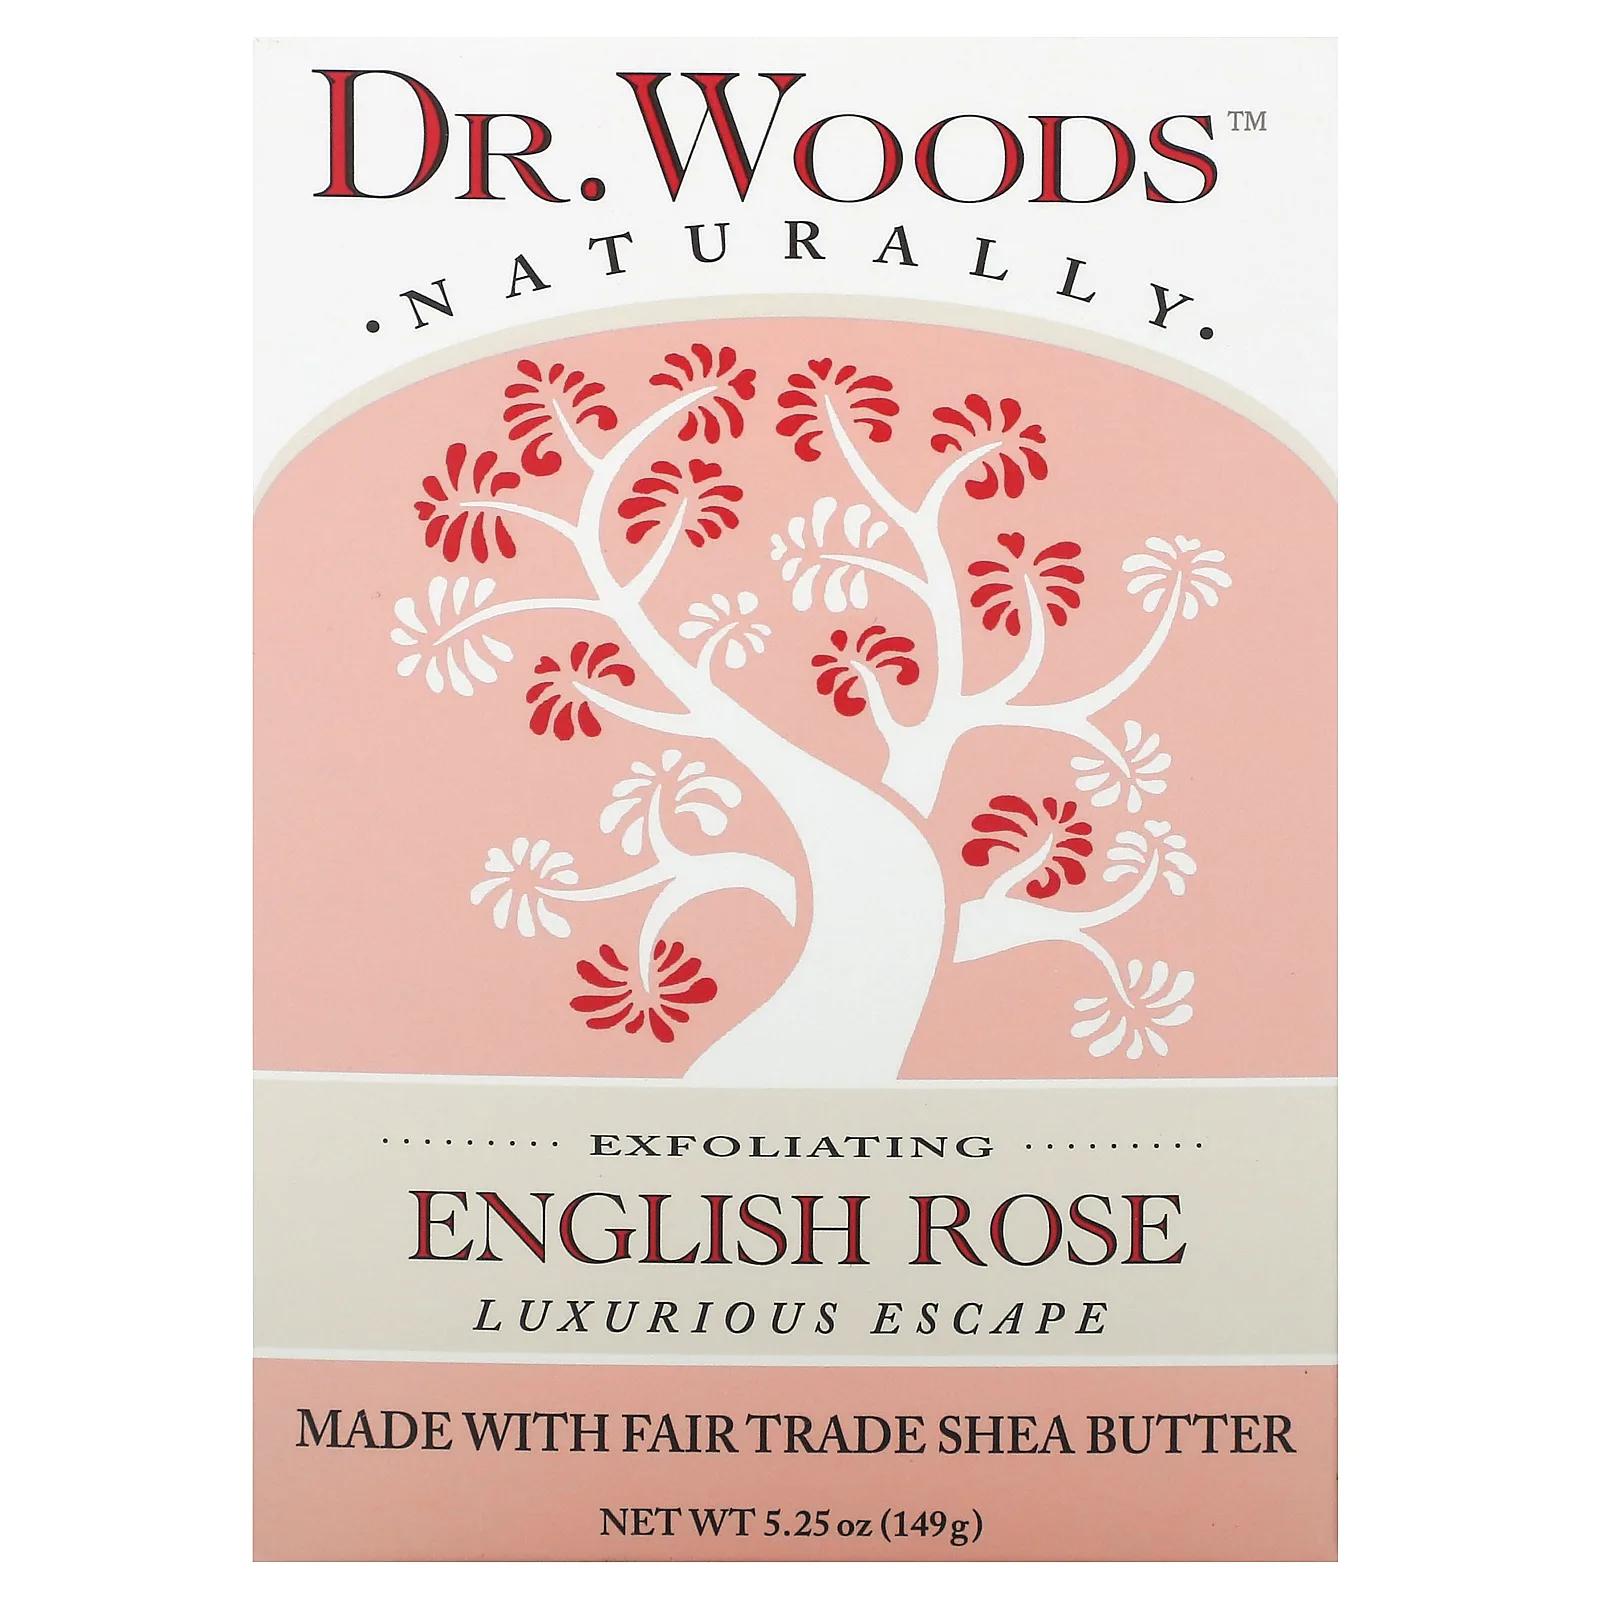 Dr. Woods Английское мыло с ароматом розы эффект осветления кожи 5.25 унций (149 г) dr woods брусковое мыло имбирь и цитрус 149 г 5 25 унции